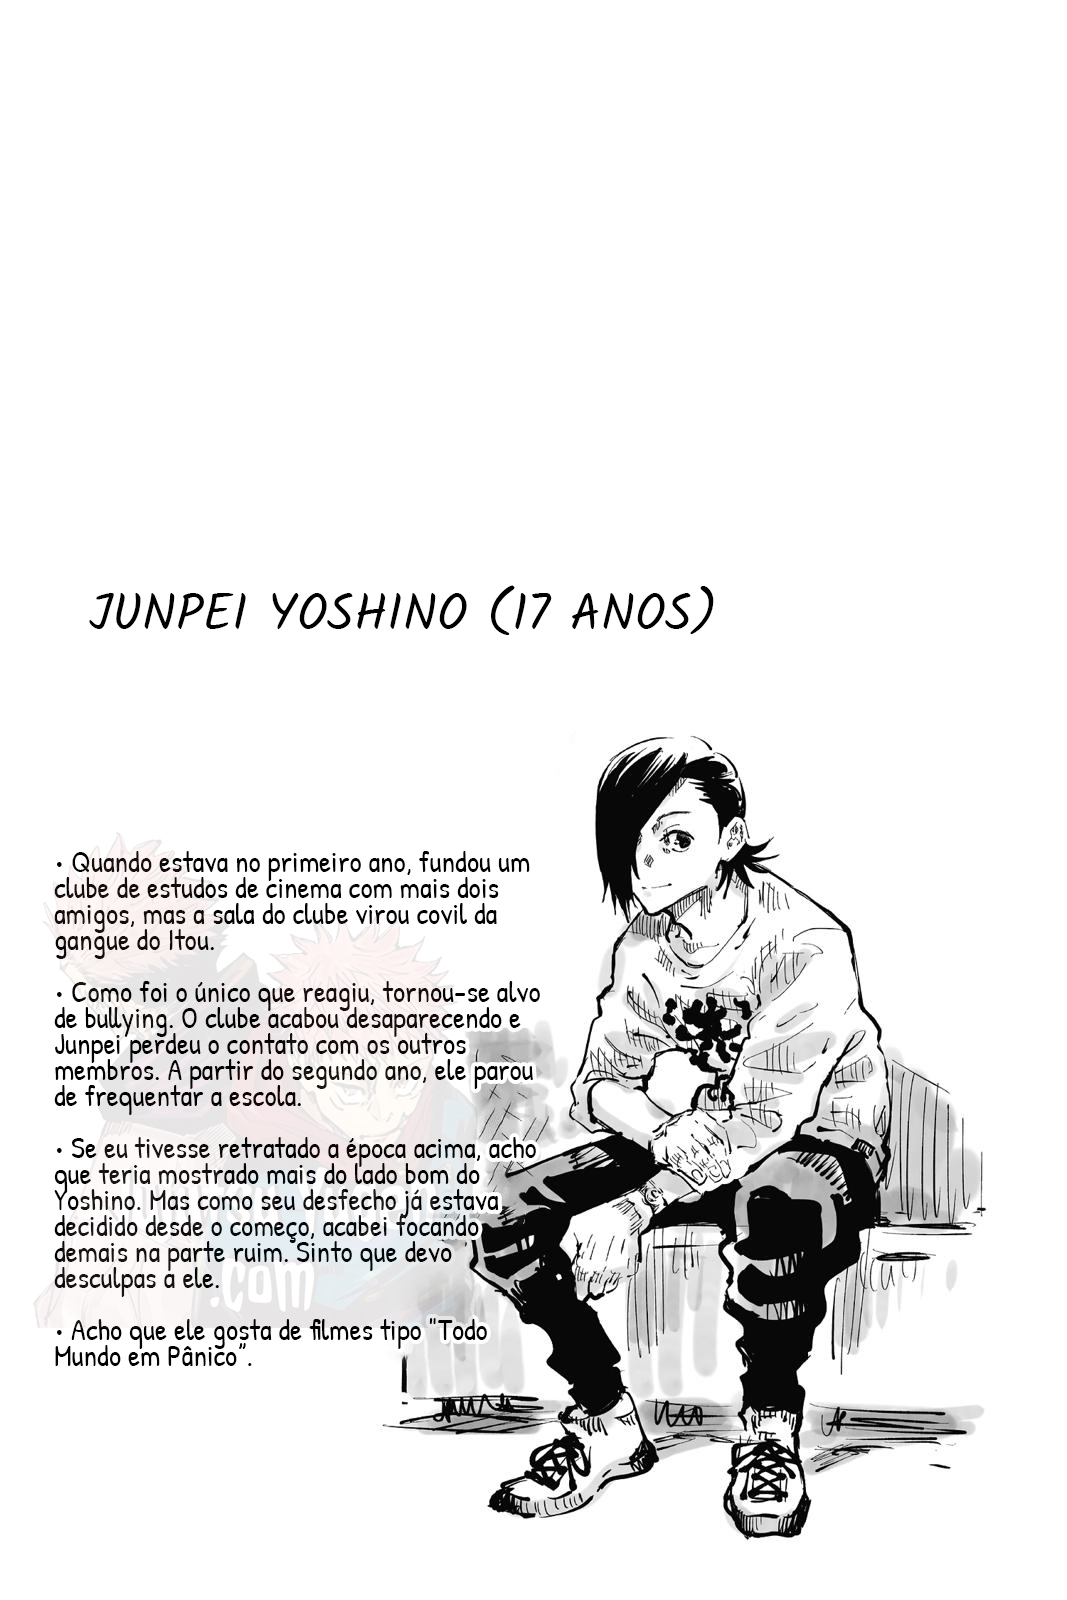 vol4-ficha-junpei-yoshino